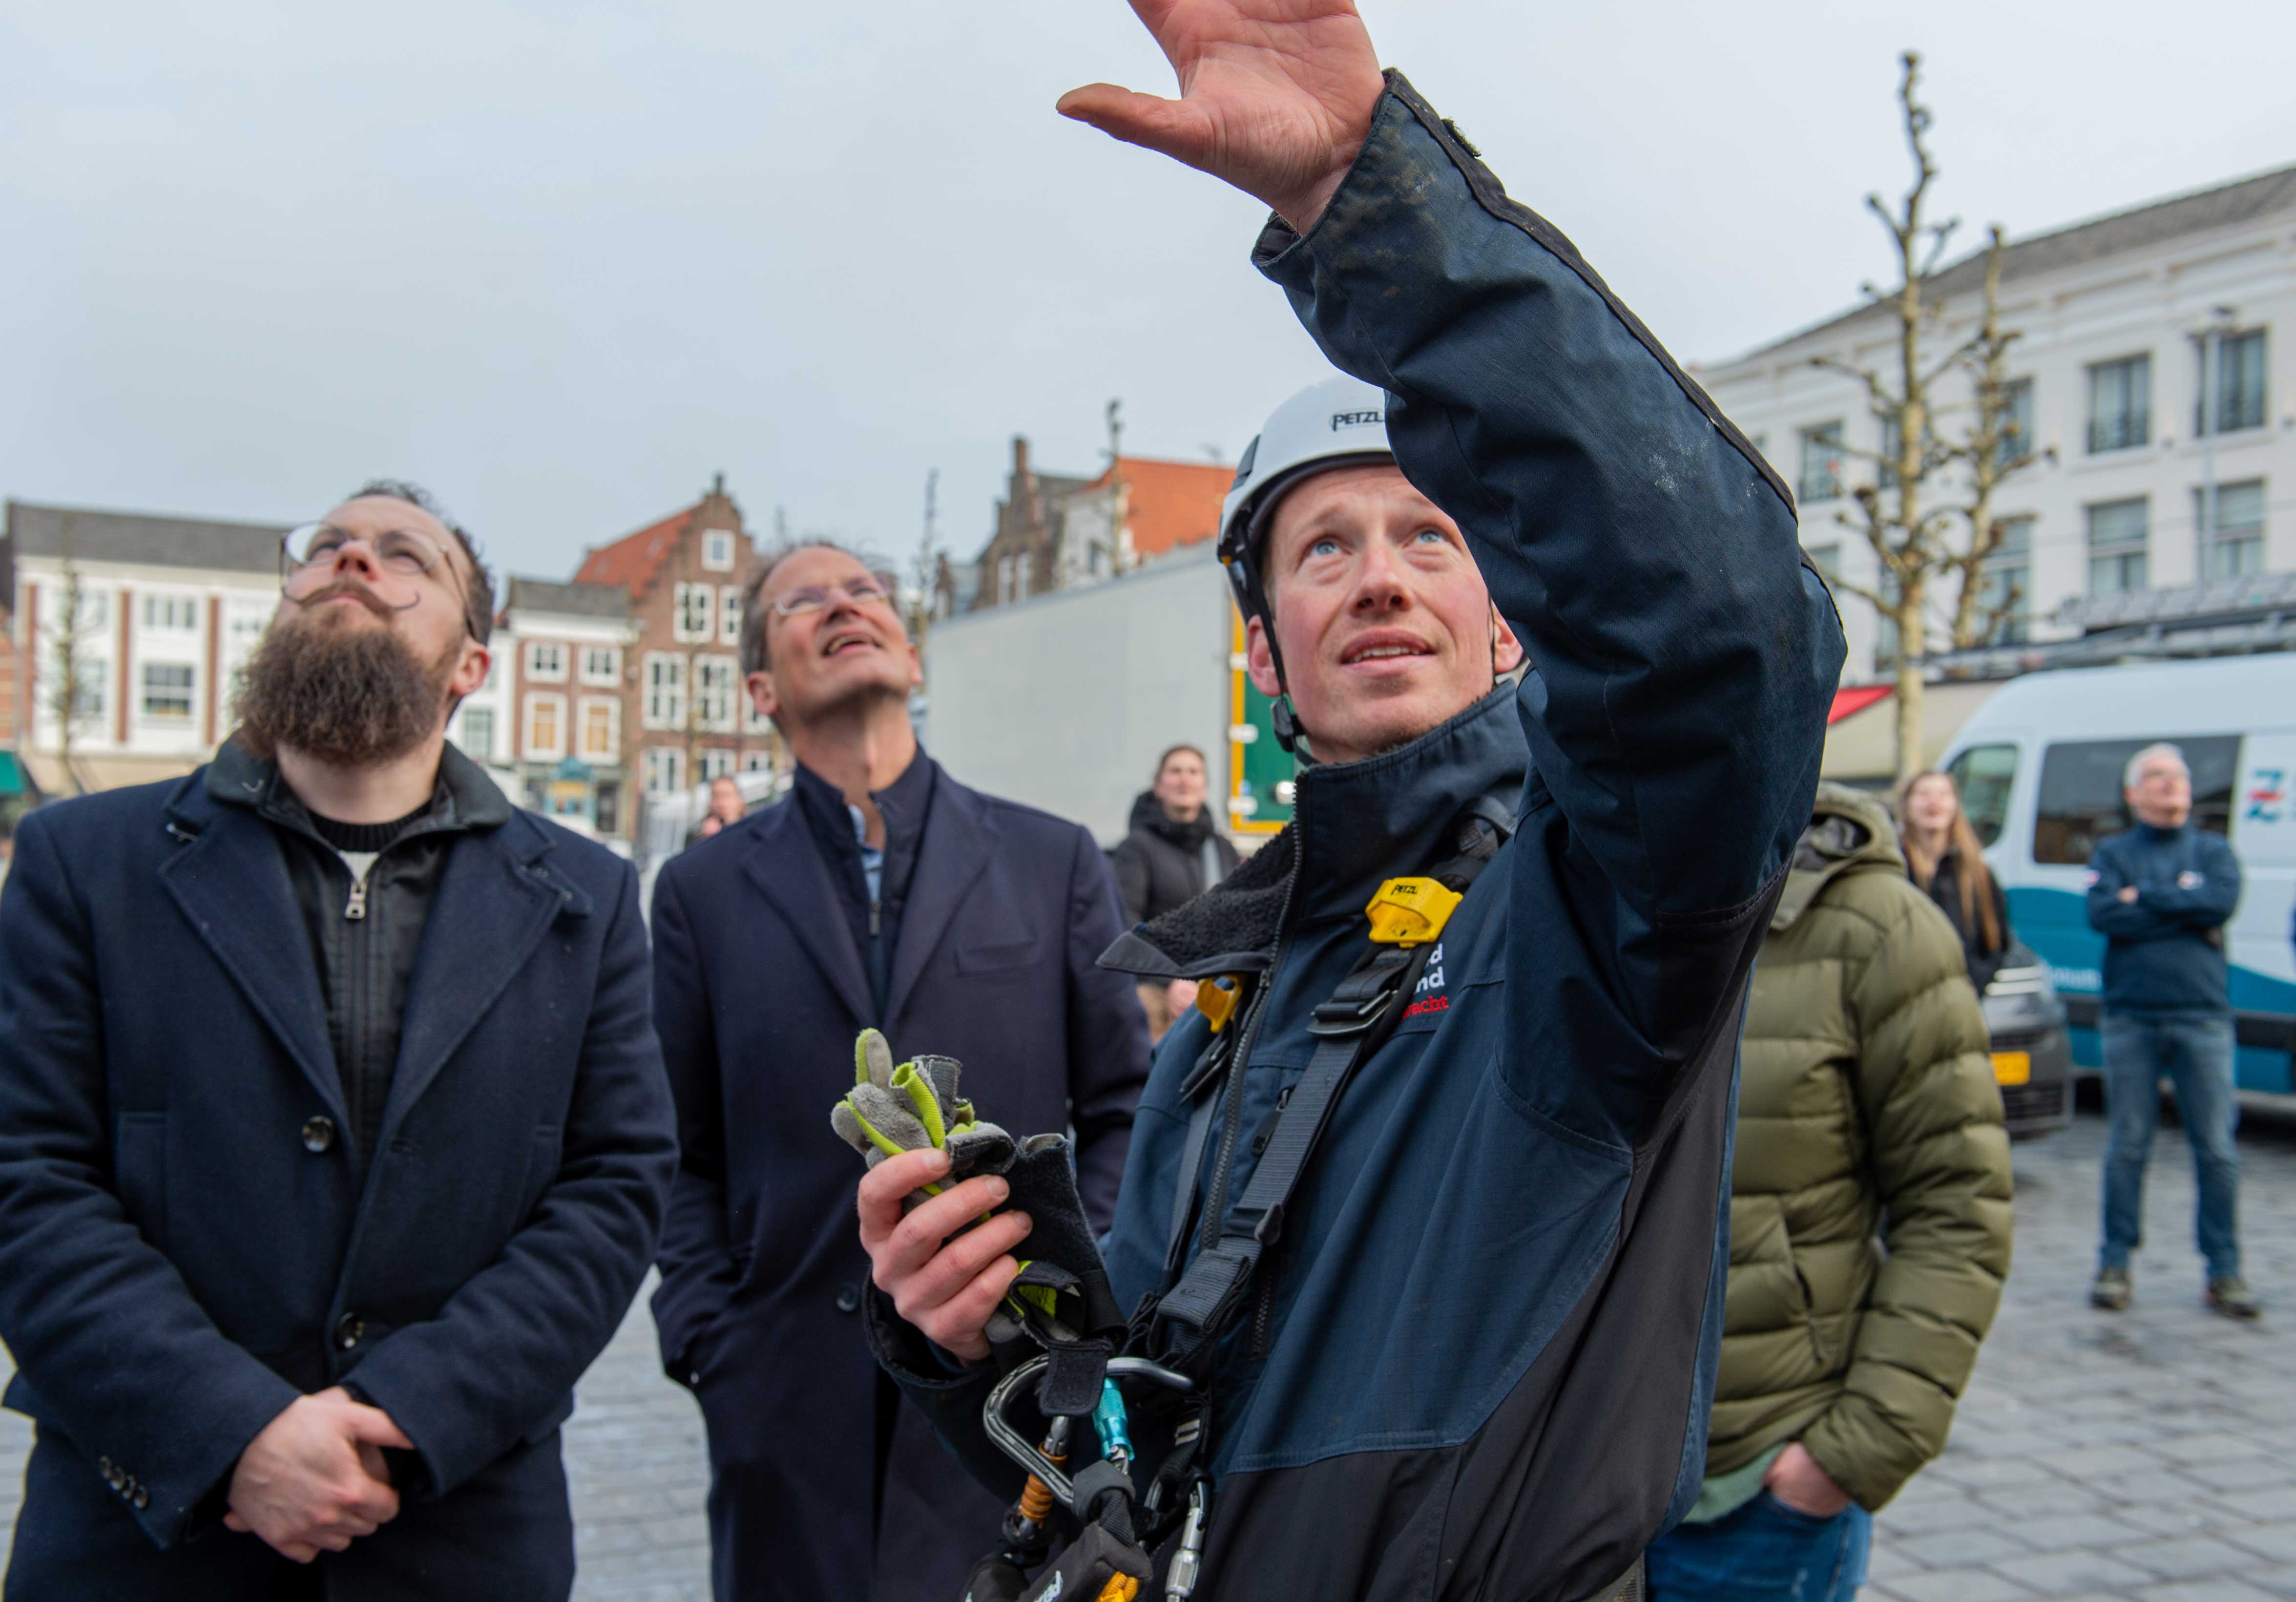 Cultuurwethouder Martijn Vermeulen, voorzitter raad van toezicht Kees-Jan Dosker en monumentenwachter Leon Leendertse volgen het uitrollen van de banner.